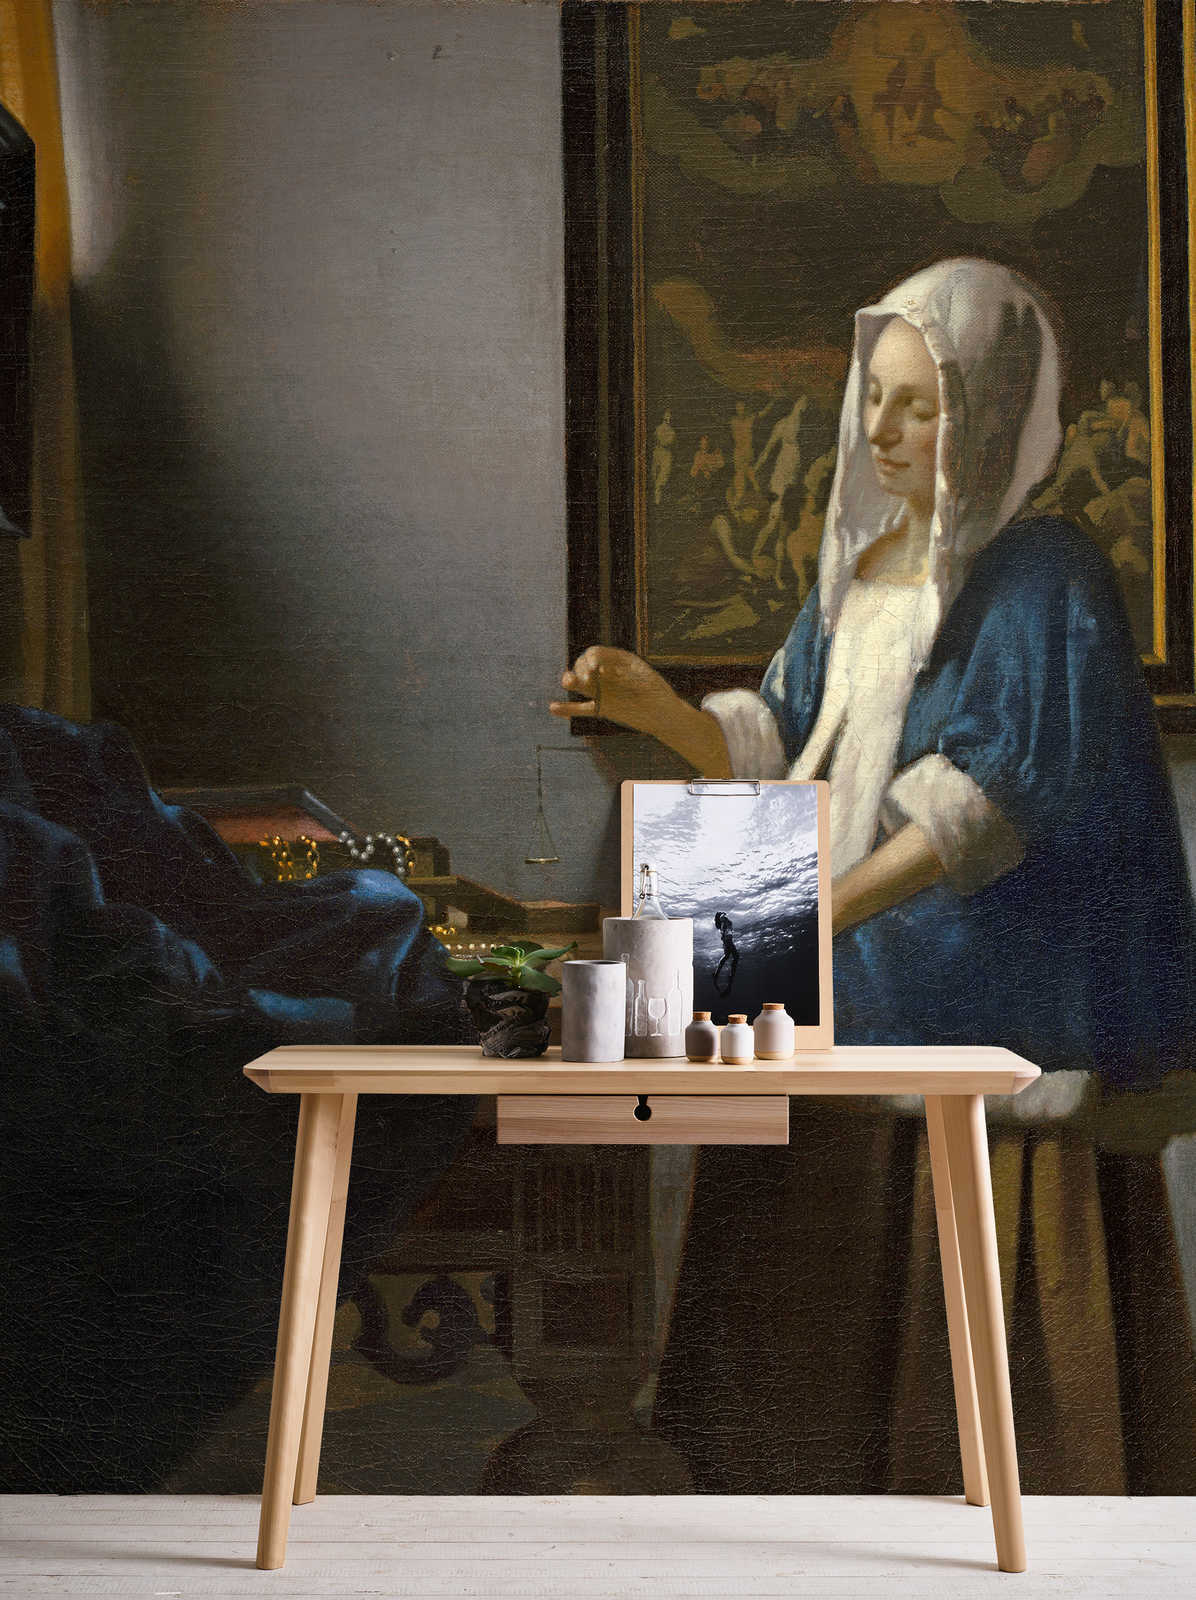             Muurschildering "Vrouw met weegschaal" van Jan Vermeer
        